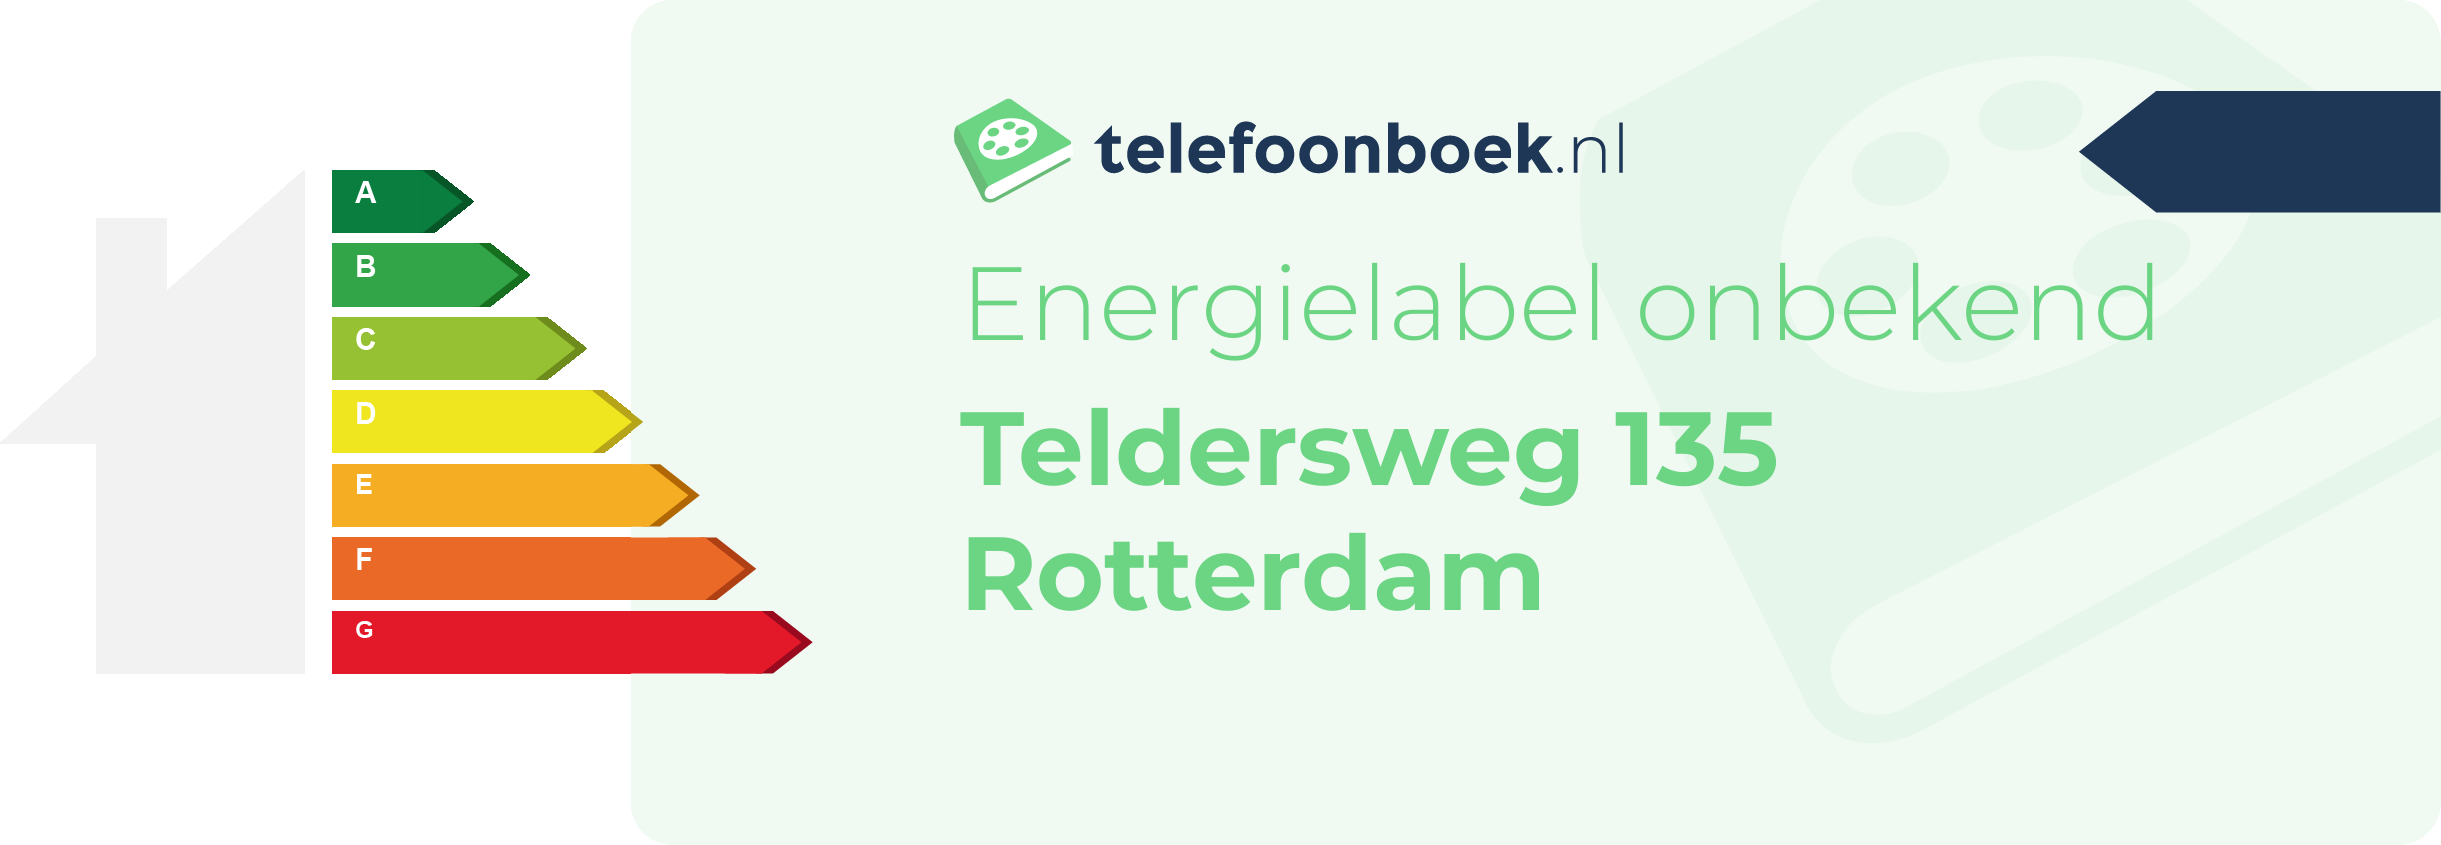 Energielabel Teldersweg 135 Rotterdam